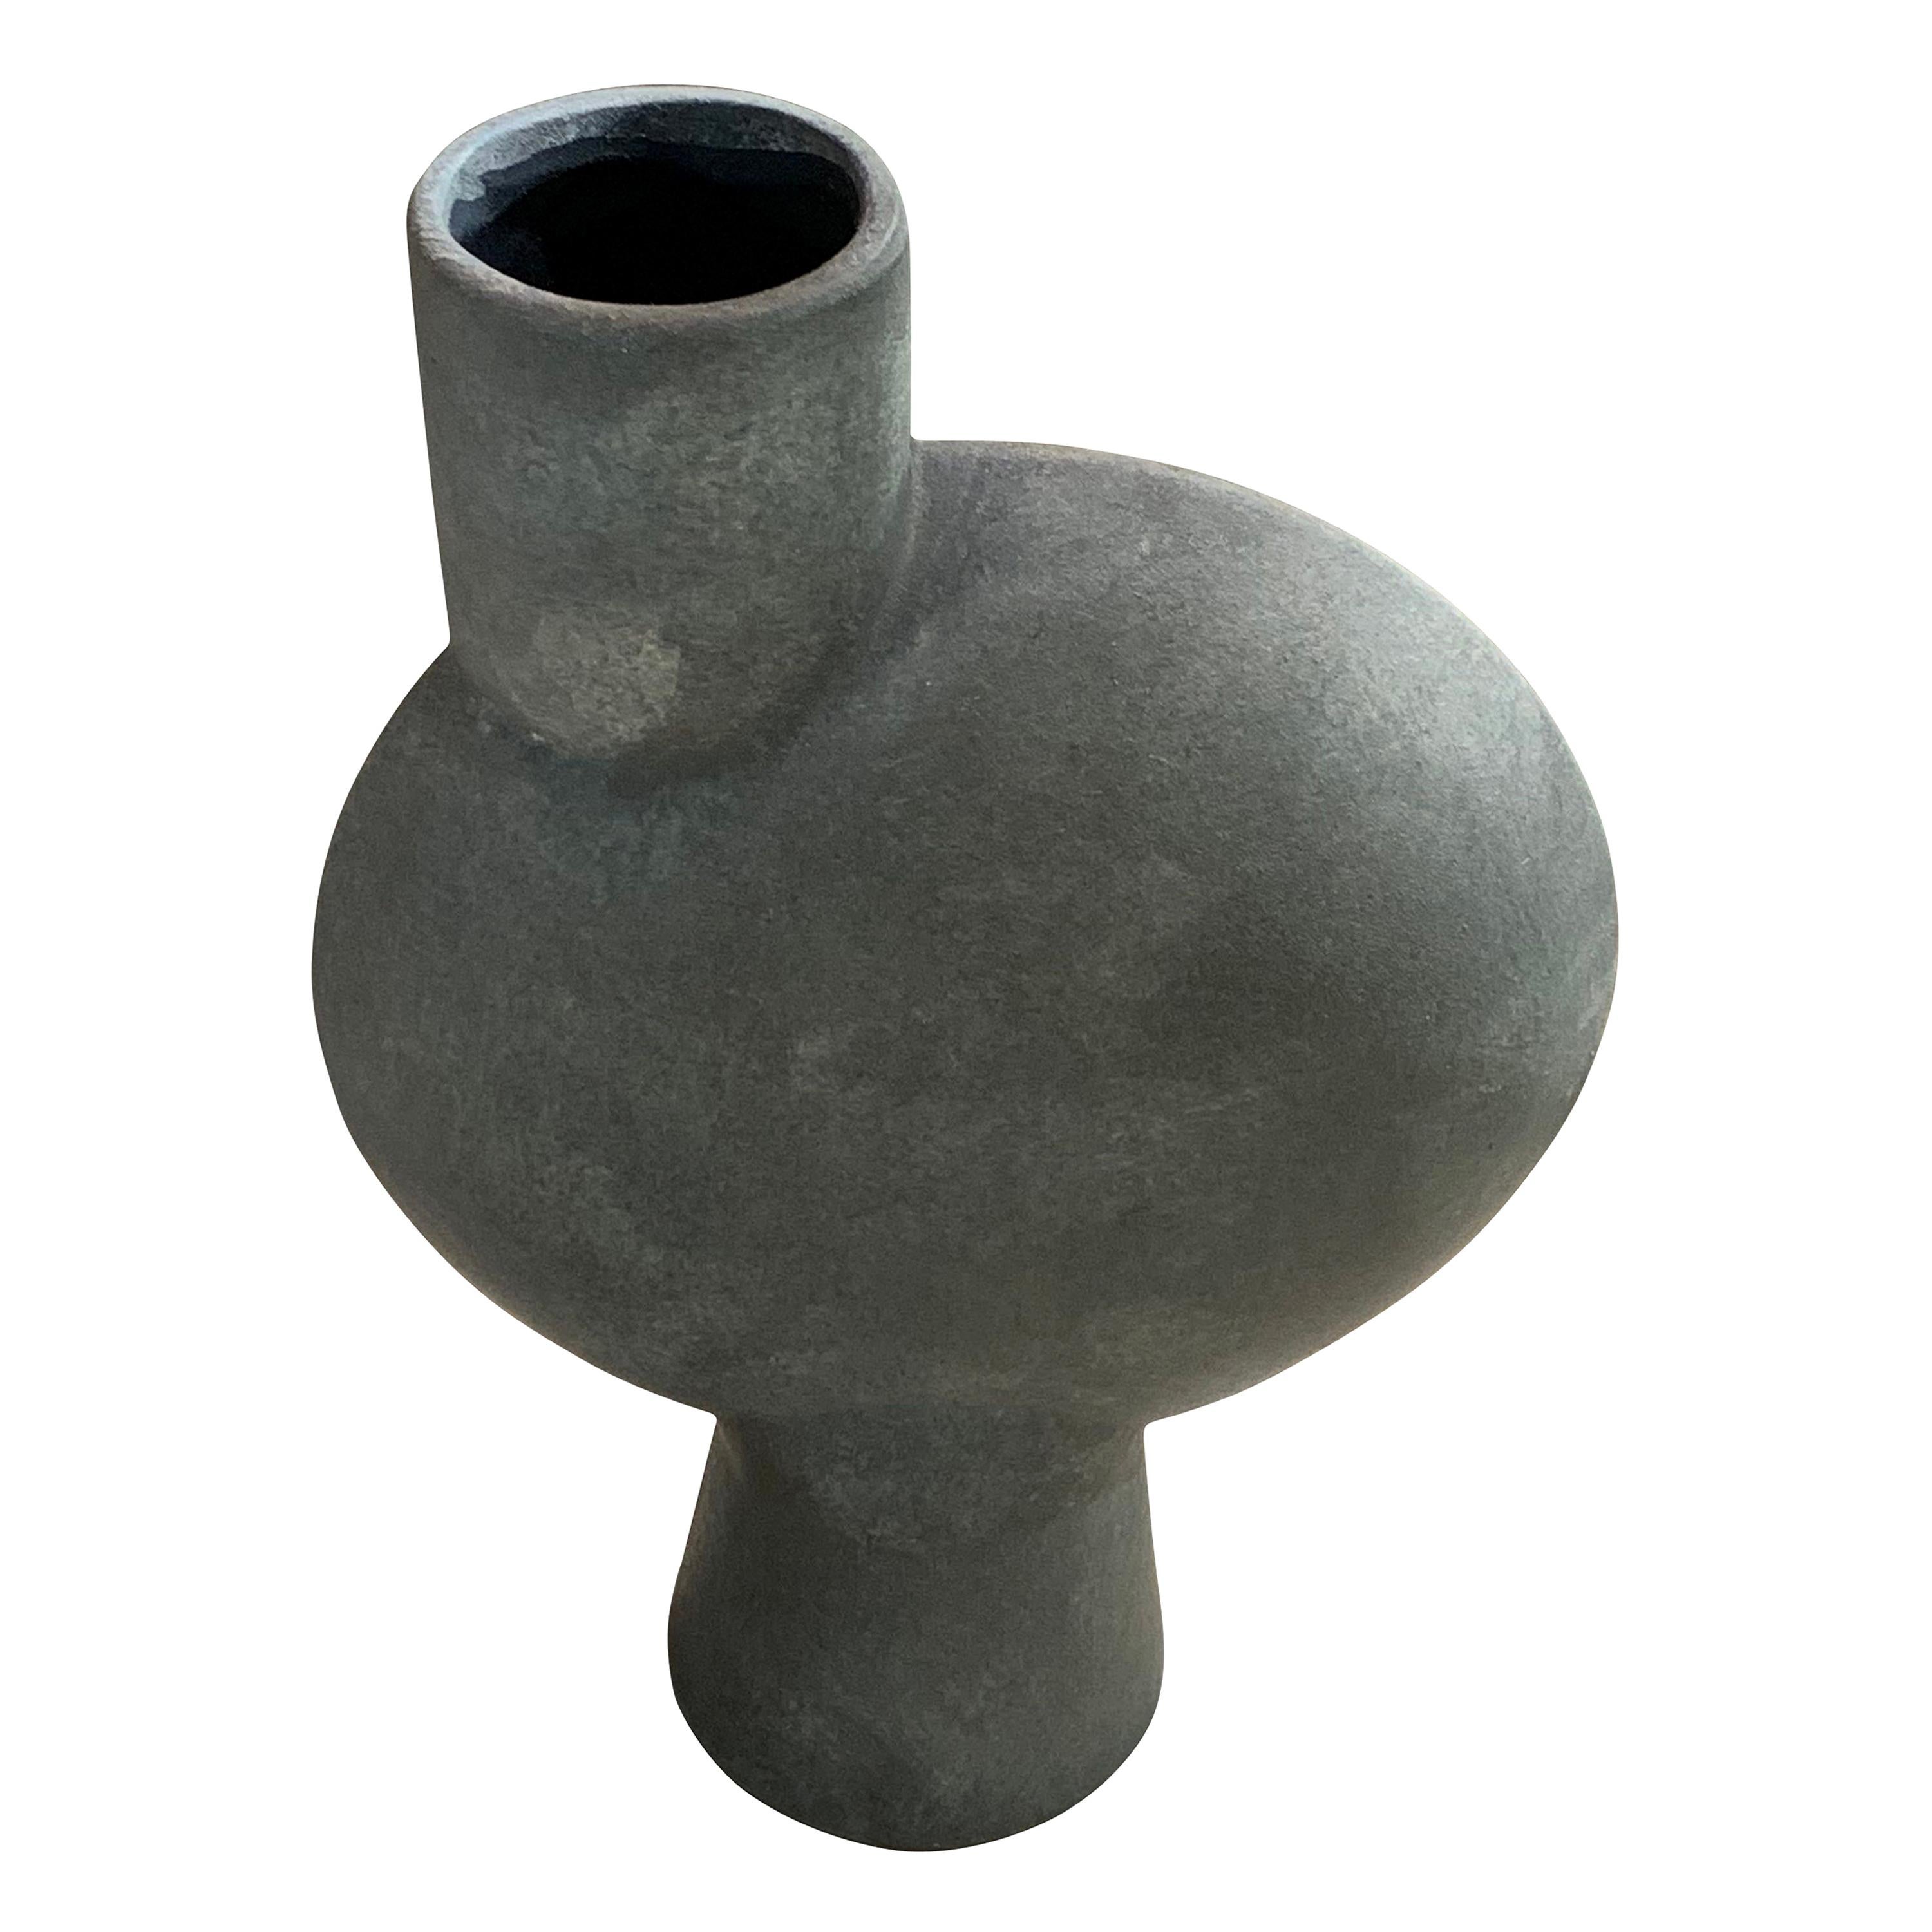 Vase en céramique en forme de globe, design danois contemporain, gris mat, avec bec verseur décentré. 
Bec et base tubulaires simples.
Deux disponibles et vendus individuellement.
ARRIVÉE EN DÉCEMBRE
  